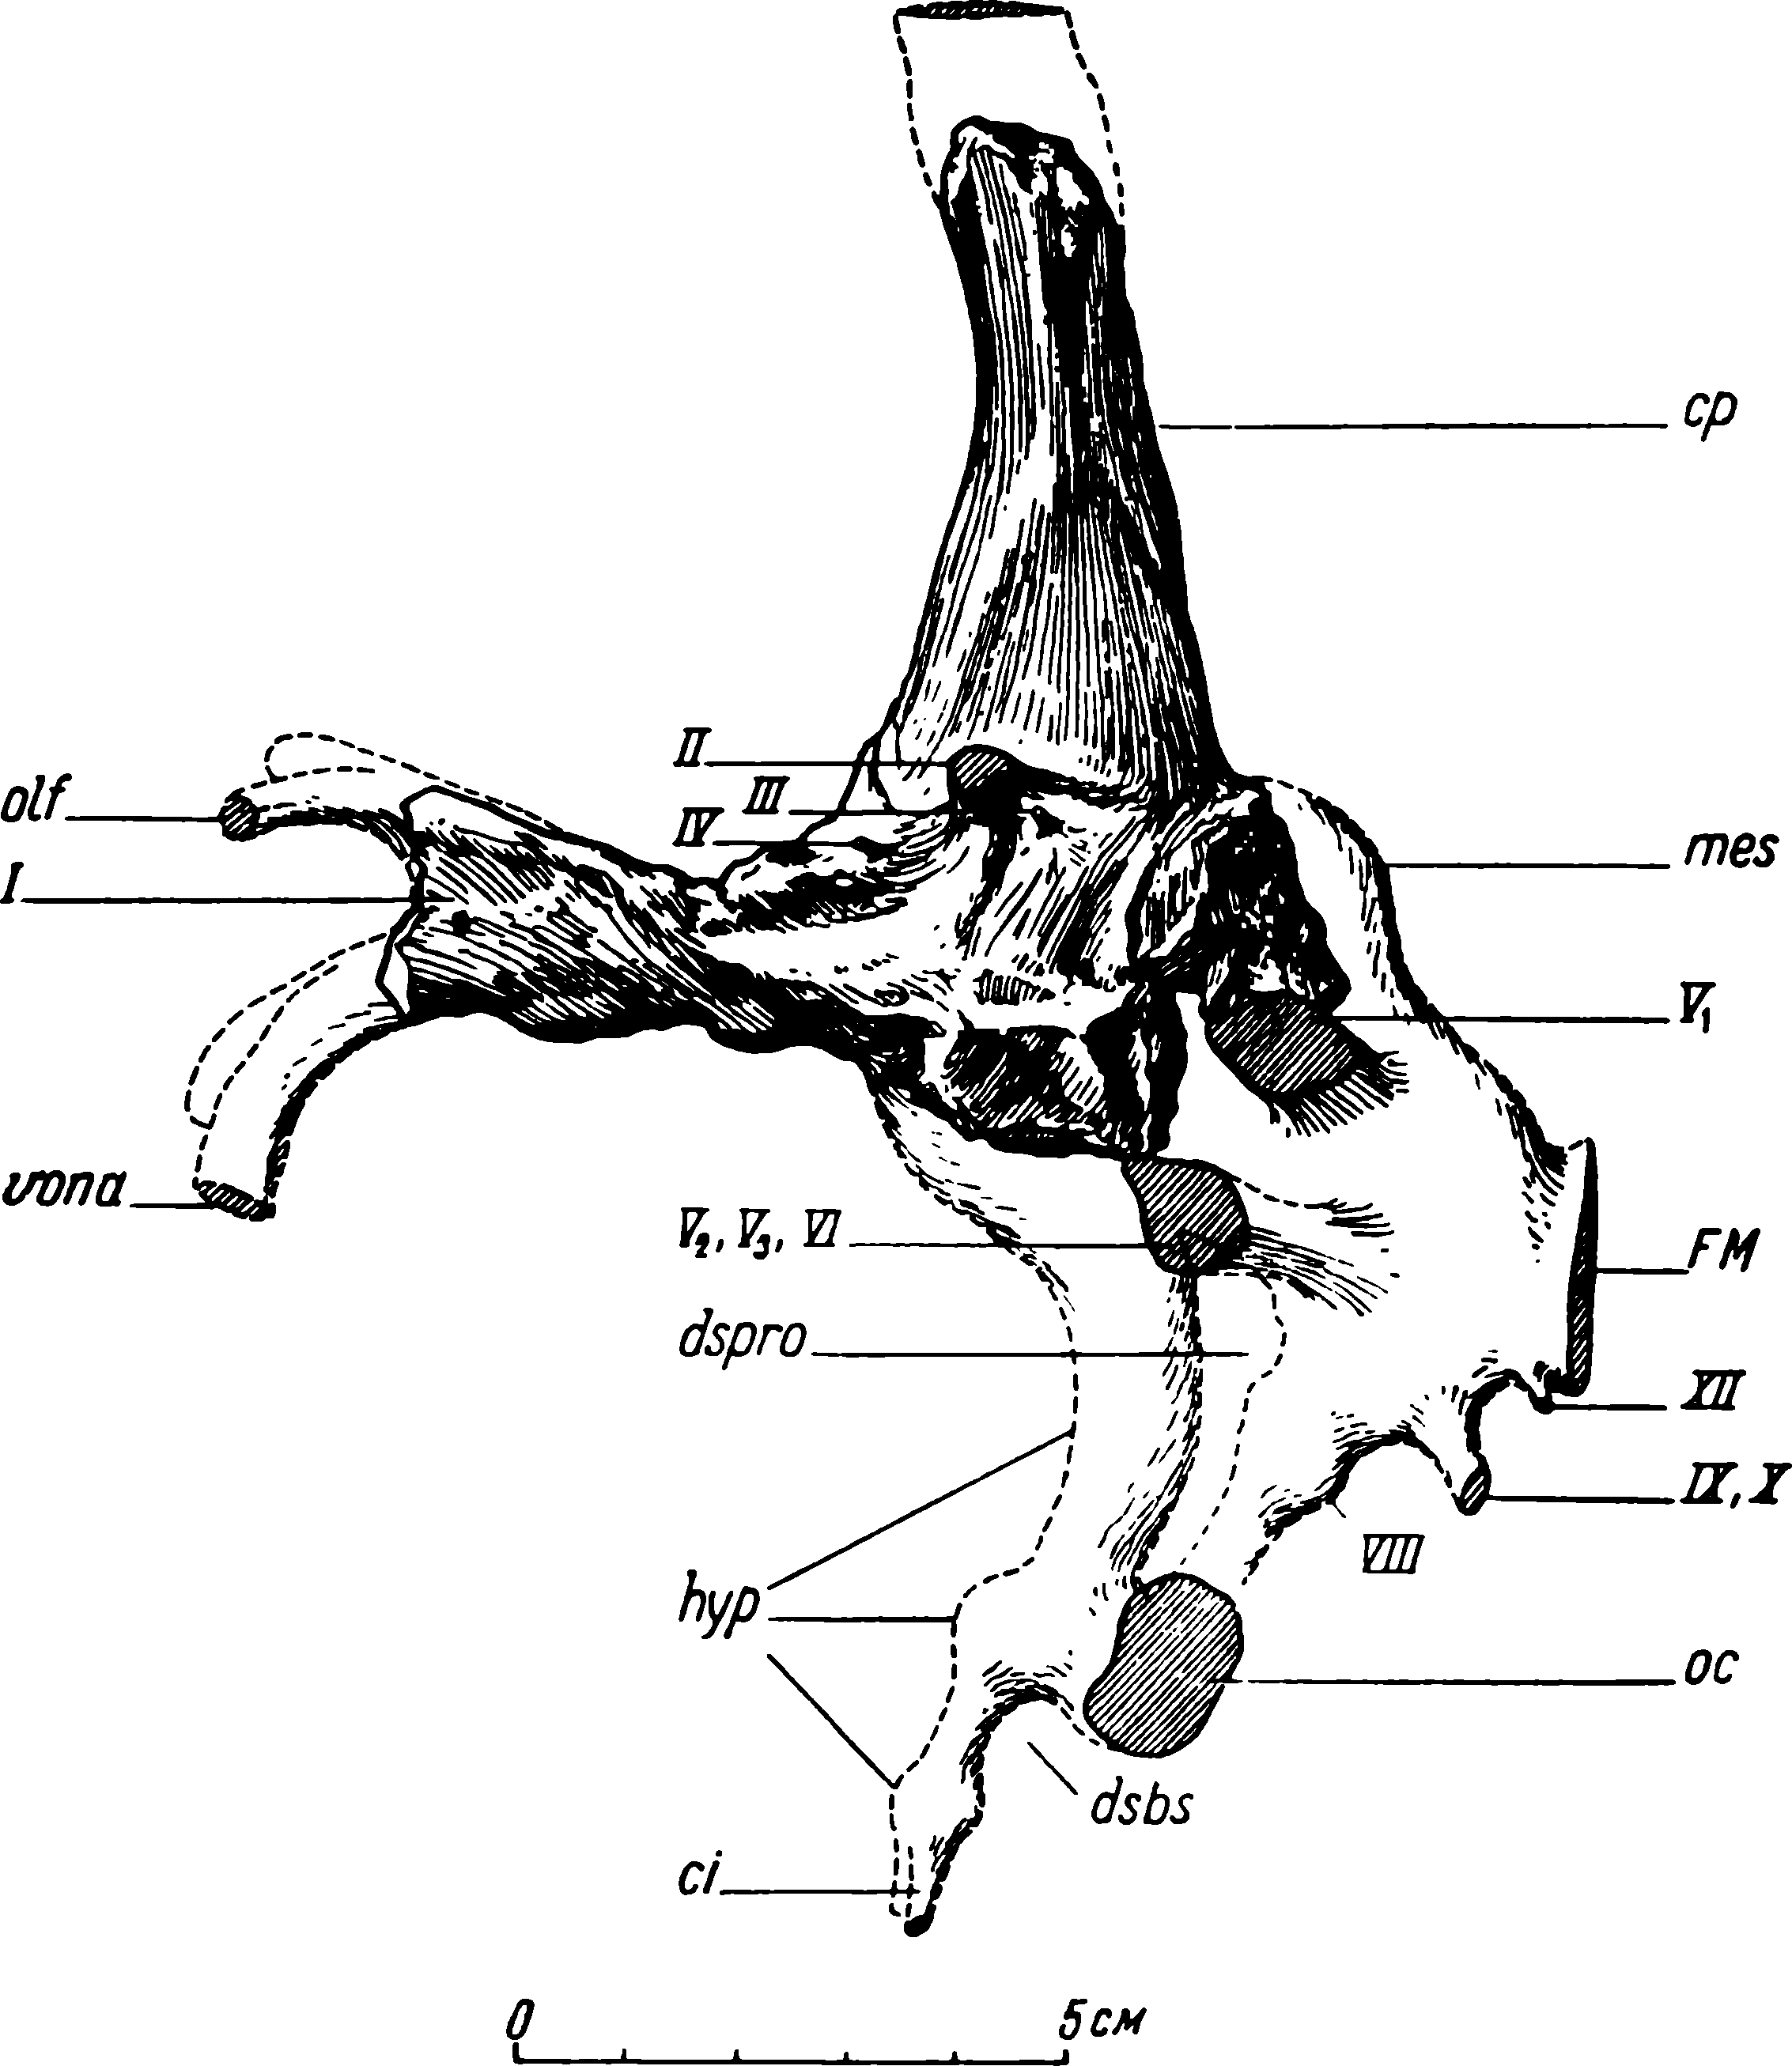 Рис. 13. Deuterosaurus biarmicus Eichw. Слепок мозговой полости ЛГМ/ЧМП № 2; недостающие части дополнены по мозговой коробке черепа ЛГМ/ЧМП № 1. Обозначения см. рис. 9, 11; кроме того: I — общий ствол обонятельного нерва; cp — пинеальный канал; dspro — dorsum sellae prooticum; dsbs — dorsum sellae basisphenoidei; FM — foramen magnum; hyp — hyrophysis; mes — средний мозг (mesencephalon); oc — разрез области fenestra ovalis; VIII, IX, X — восьмой, девятый и десятый черепные нервы (n. n. acuslicus glossopharyngeus et vagus), XII — двенадцатый черепной нерв (n. hypoglossus)